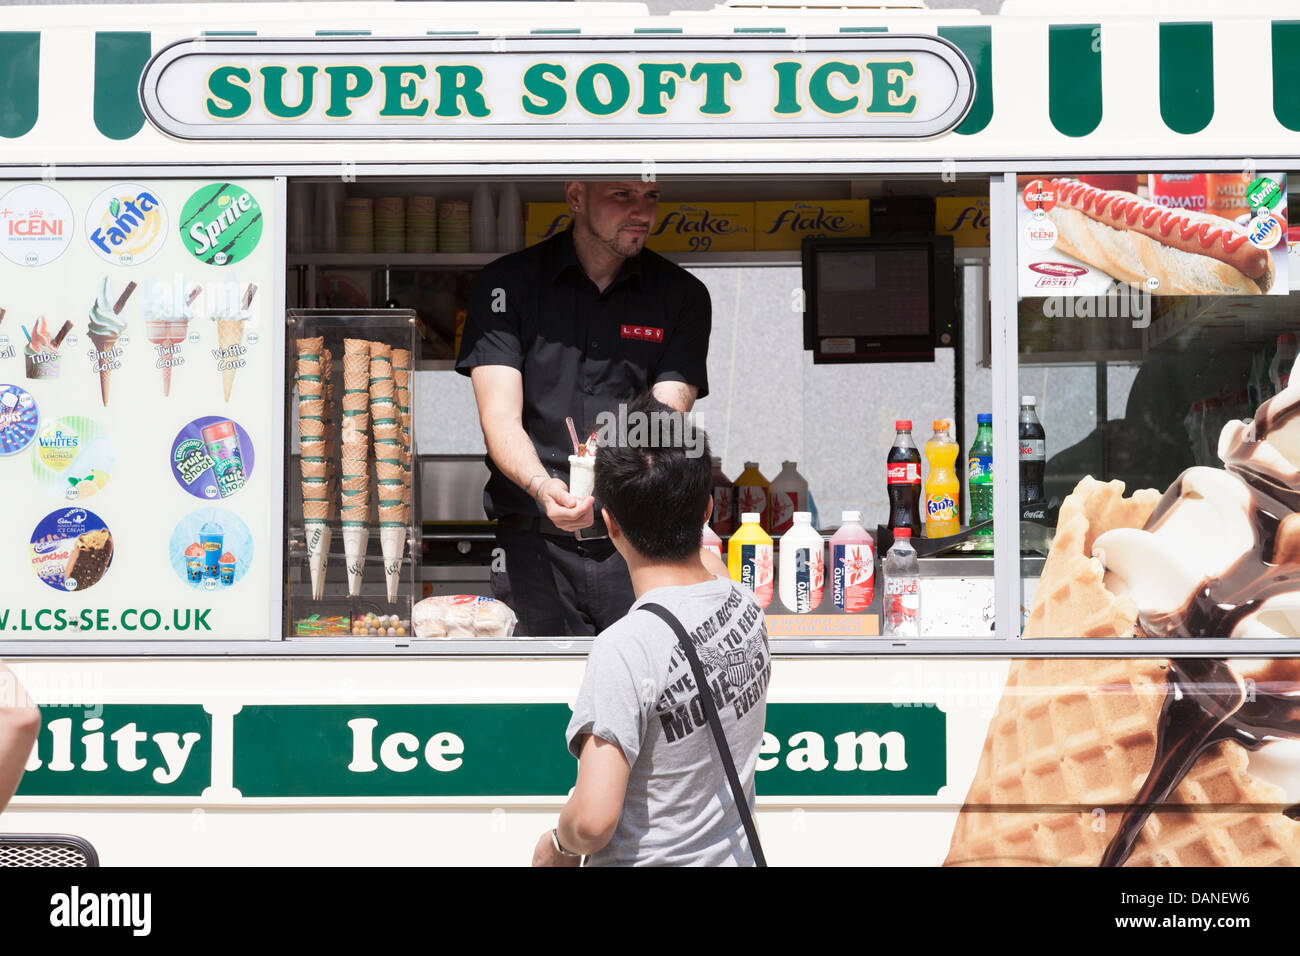 Super Soft Ice, London, UK Stock Photo